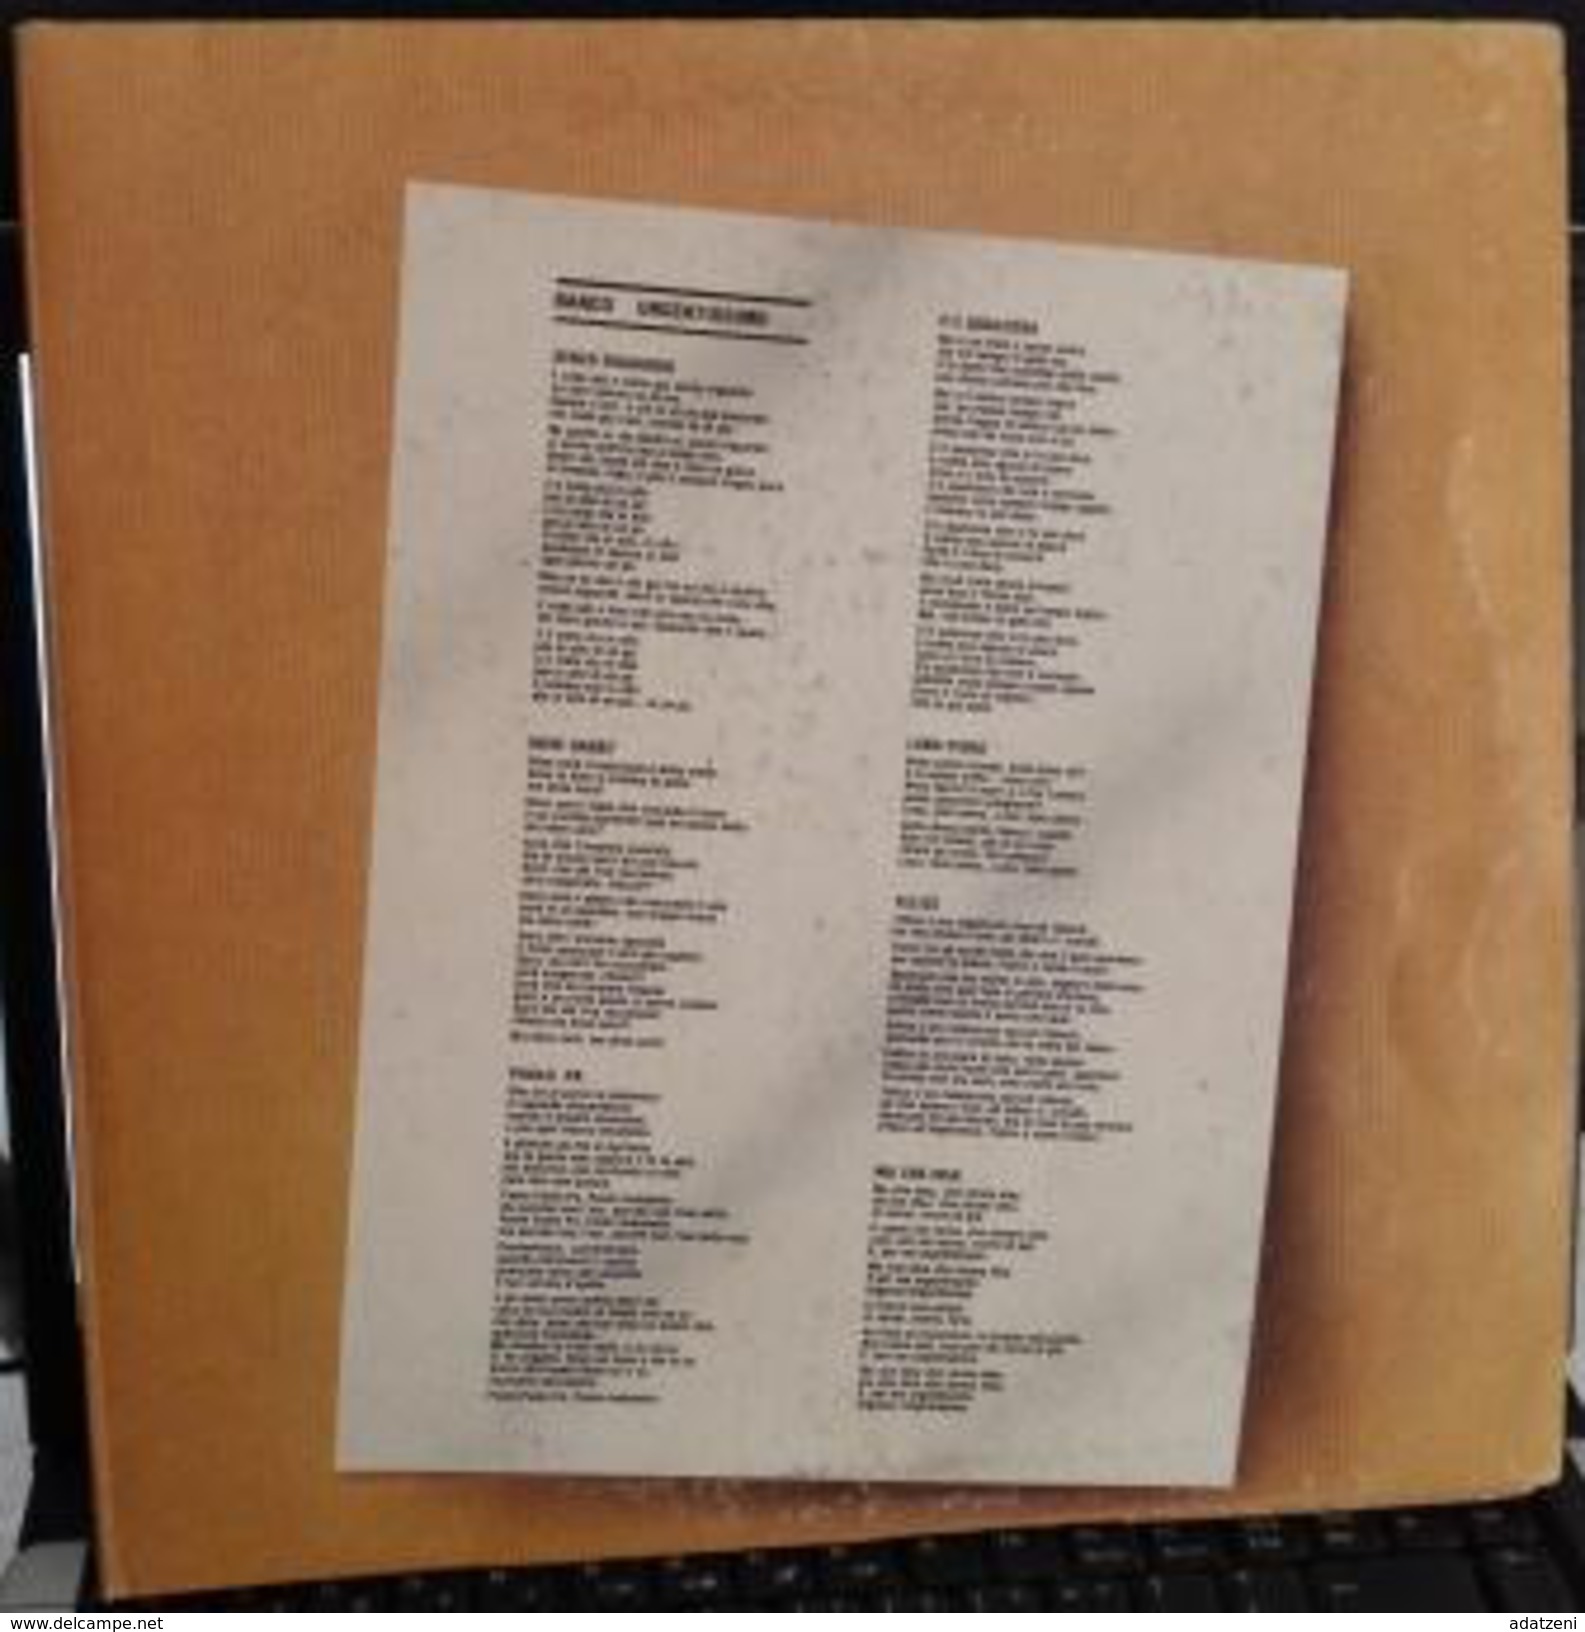 LP –URGENTISSIMO 1980 BANCO DEL MUTUO SOCCORSO - Other - Italian Music